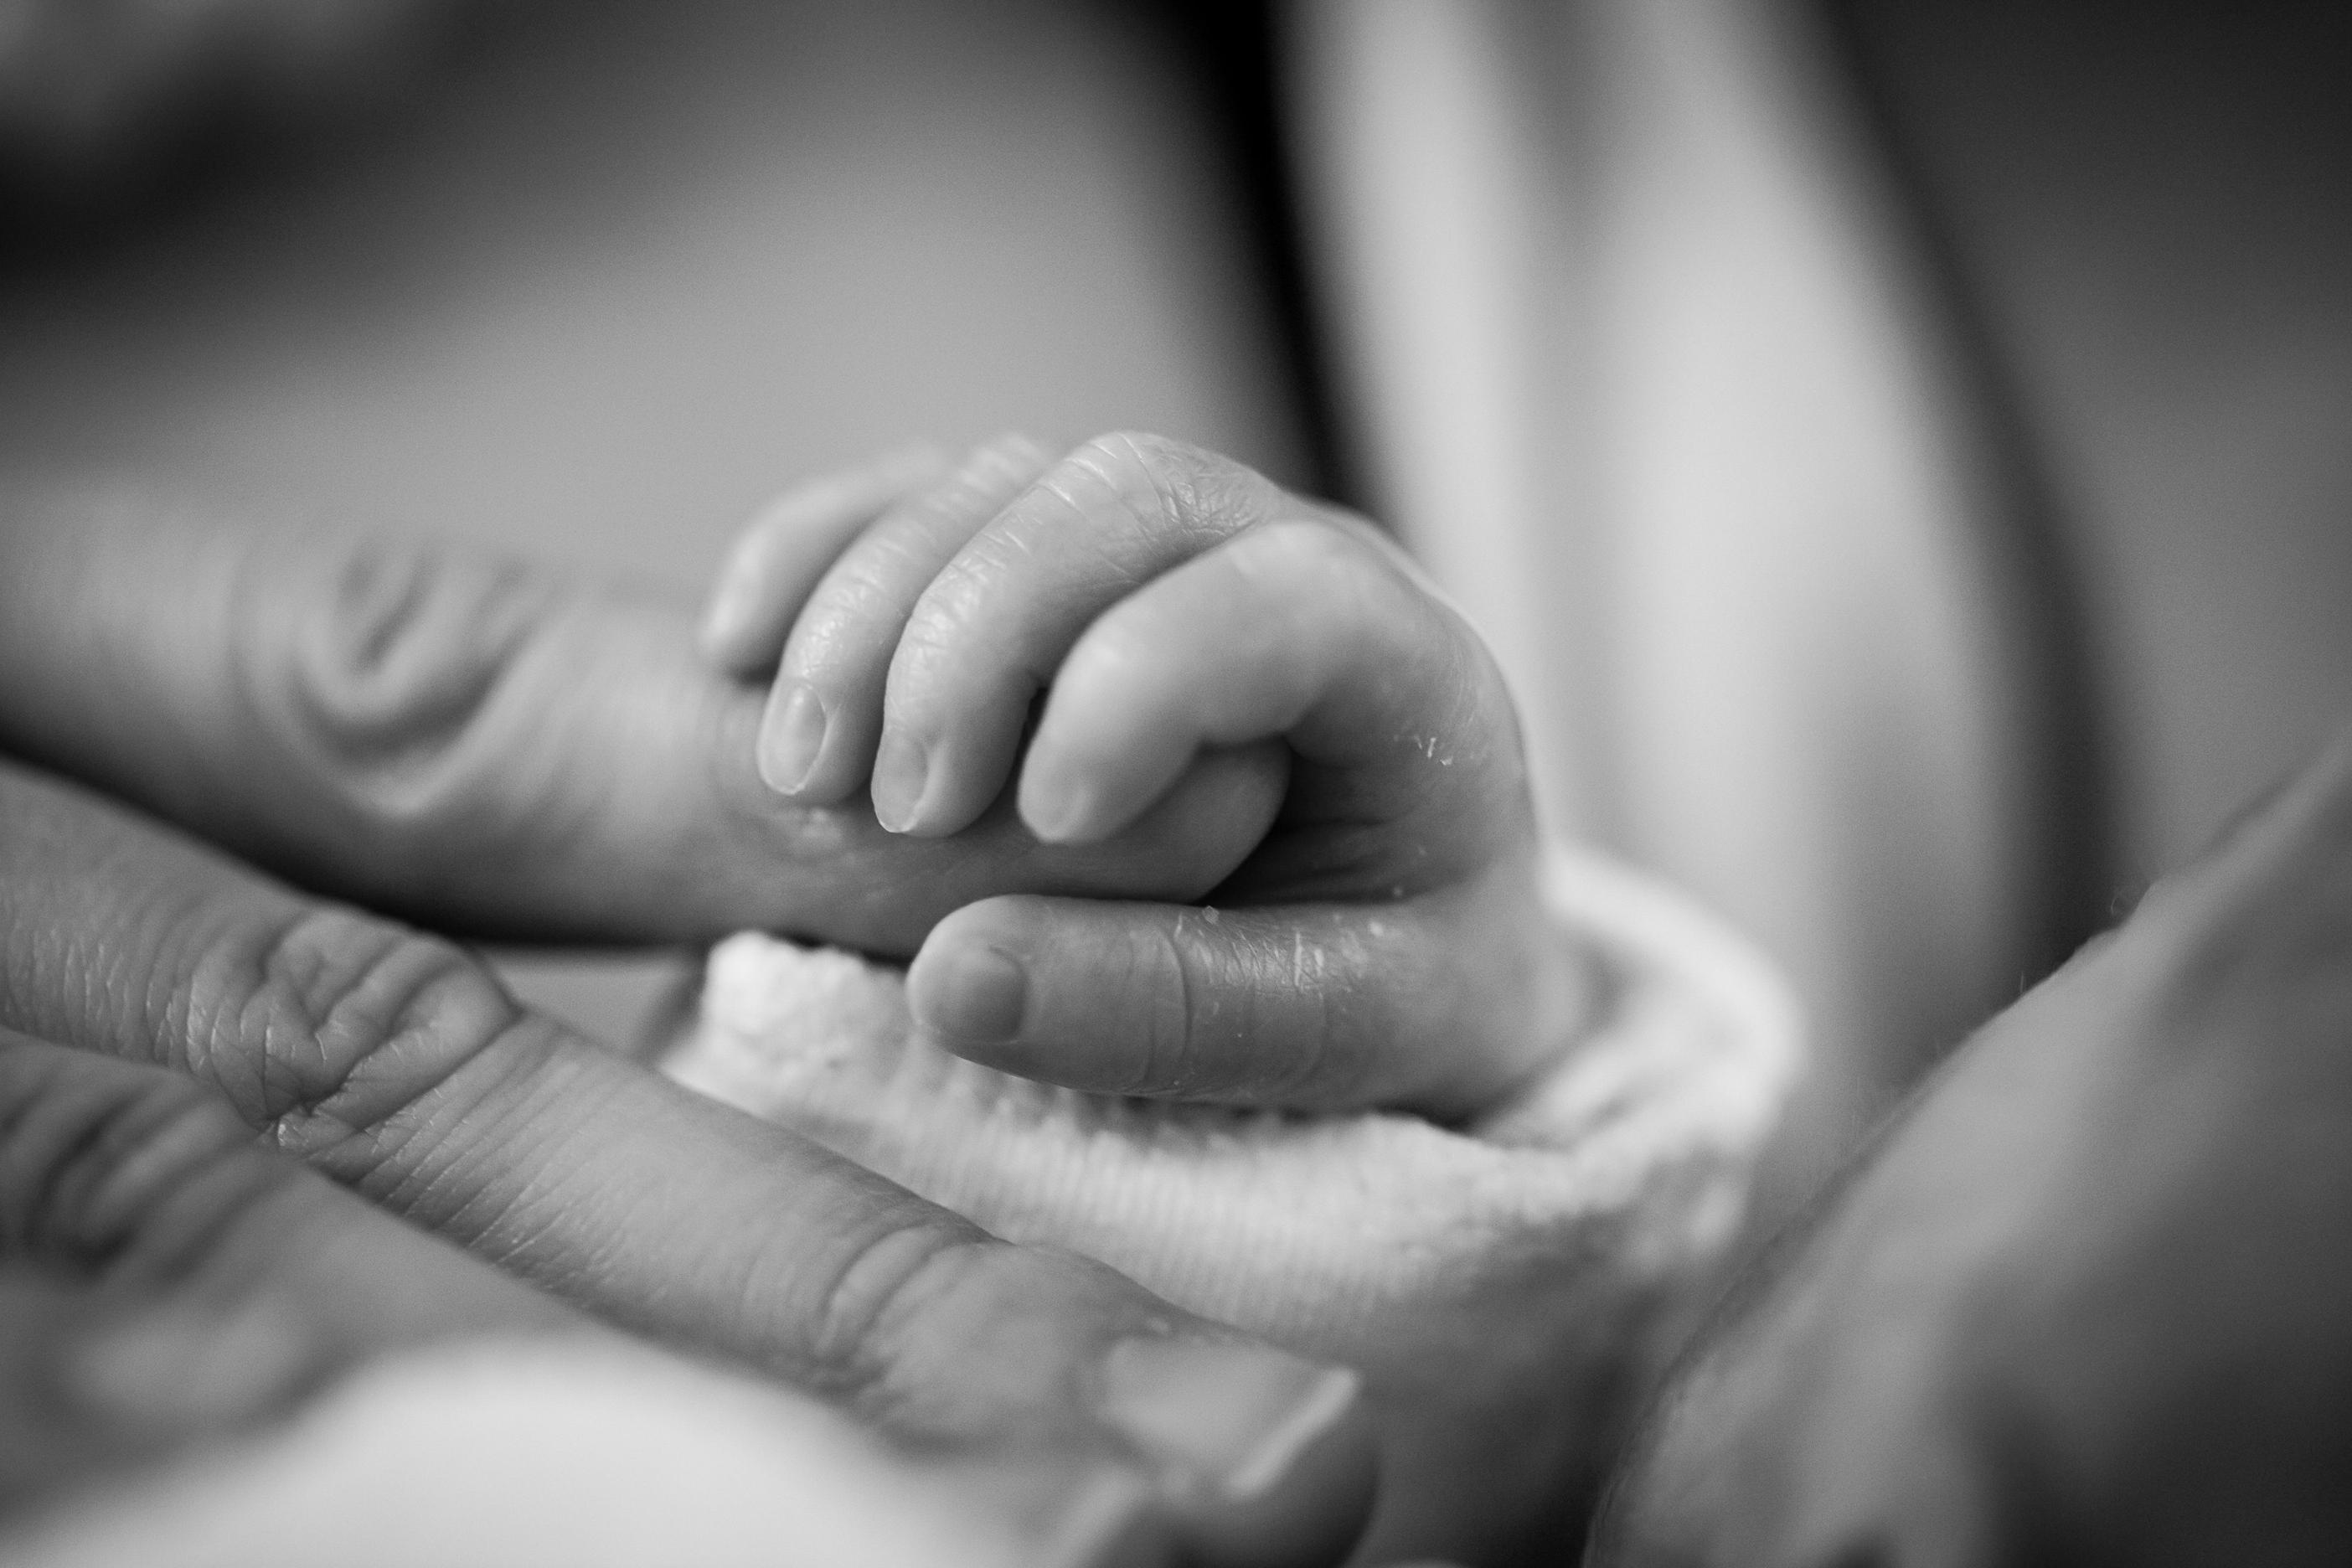 Etapy rozwoju wzroku u niemowląt od narodzin do pierwszego roku życia